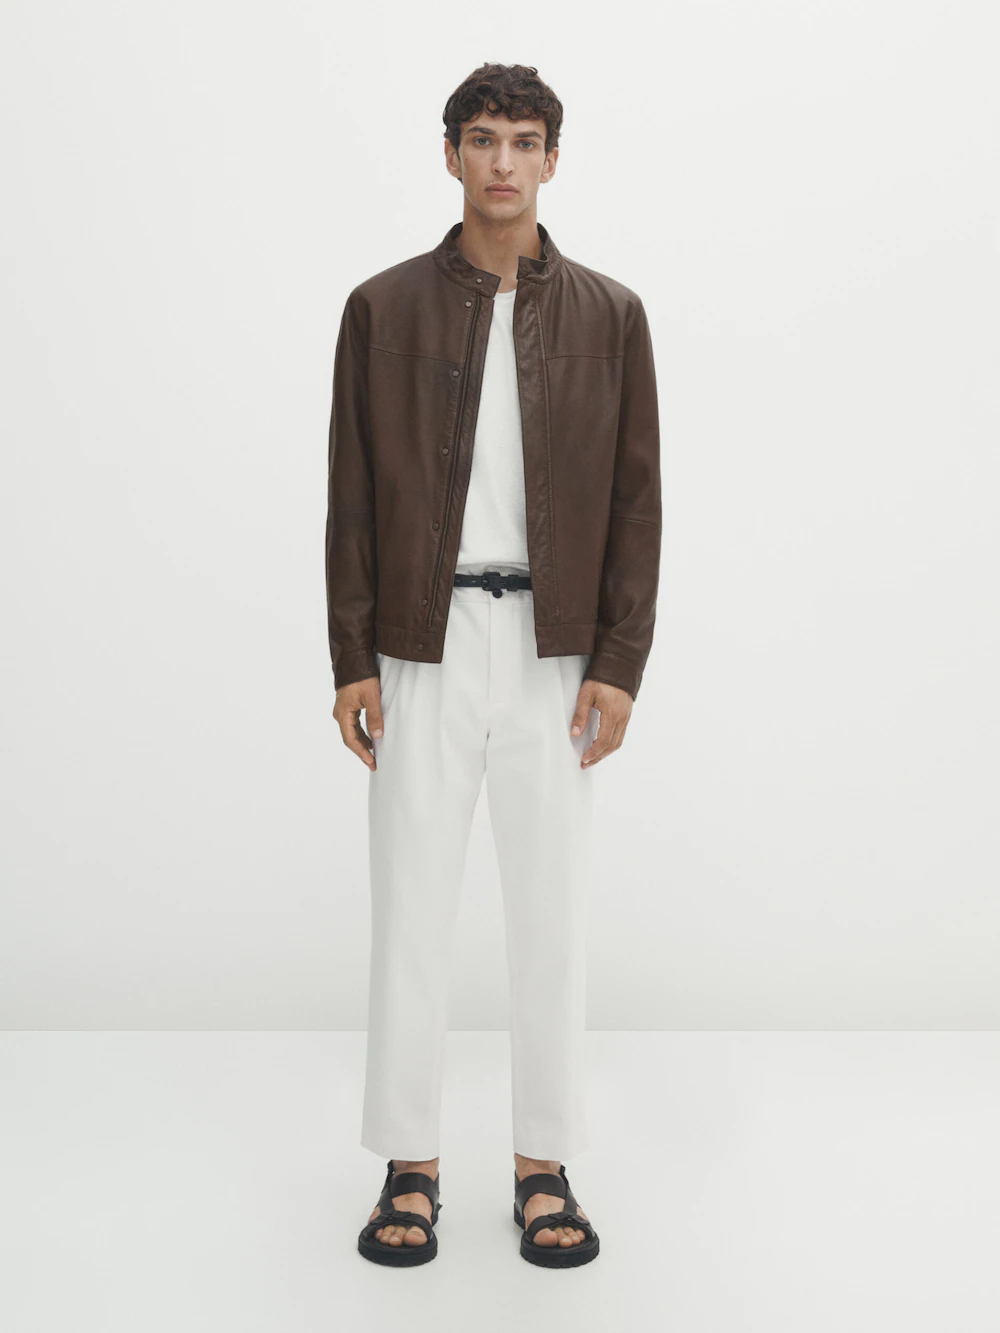 Куртка Massimo Dutti Nappa Leather, коричневый куртка рубашка massimo dutti nappa leather with pocket коричневый